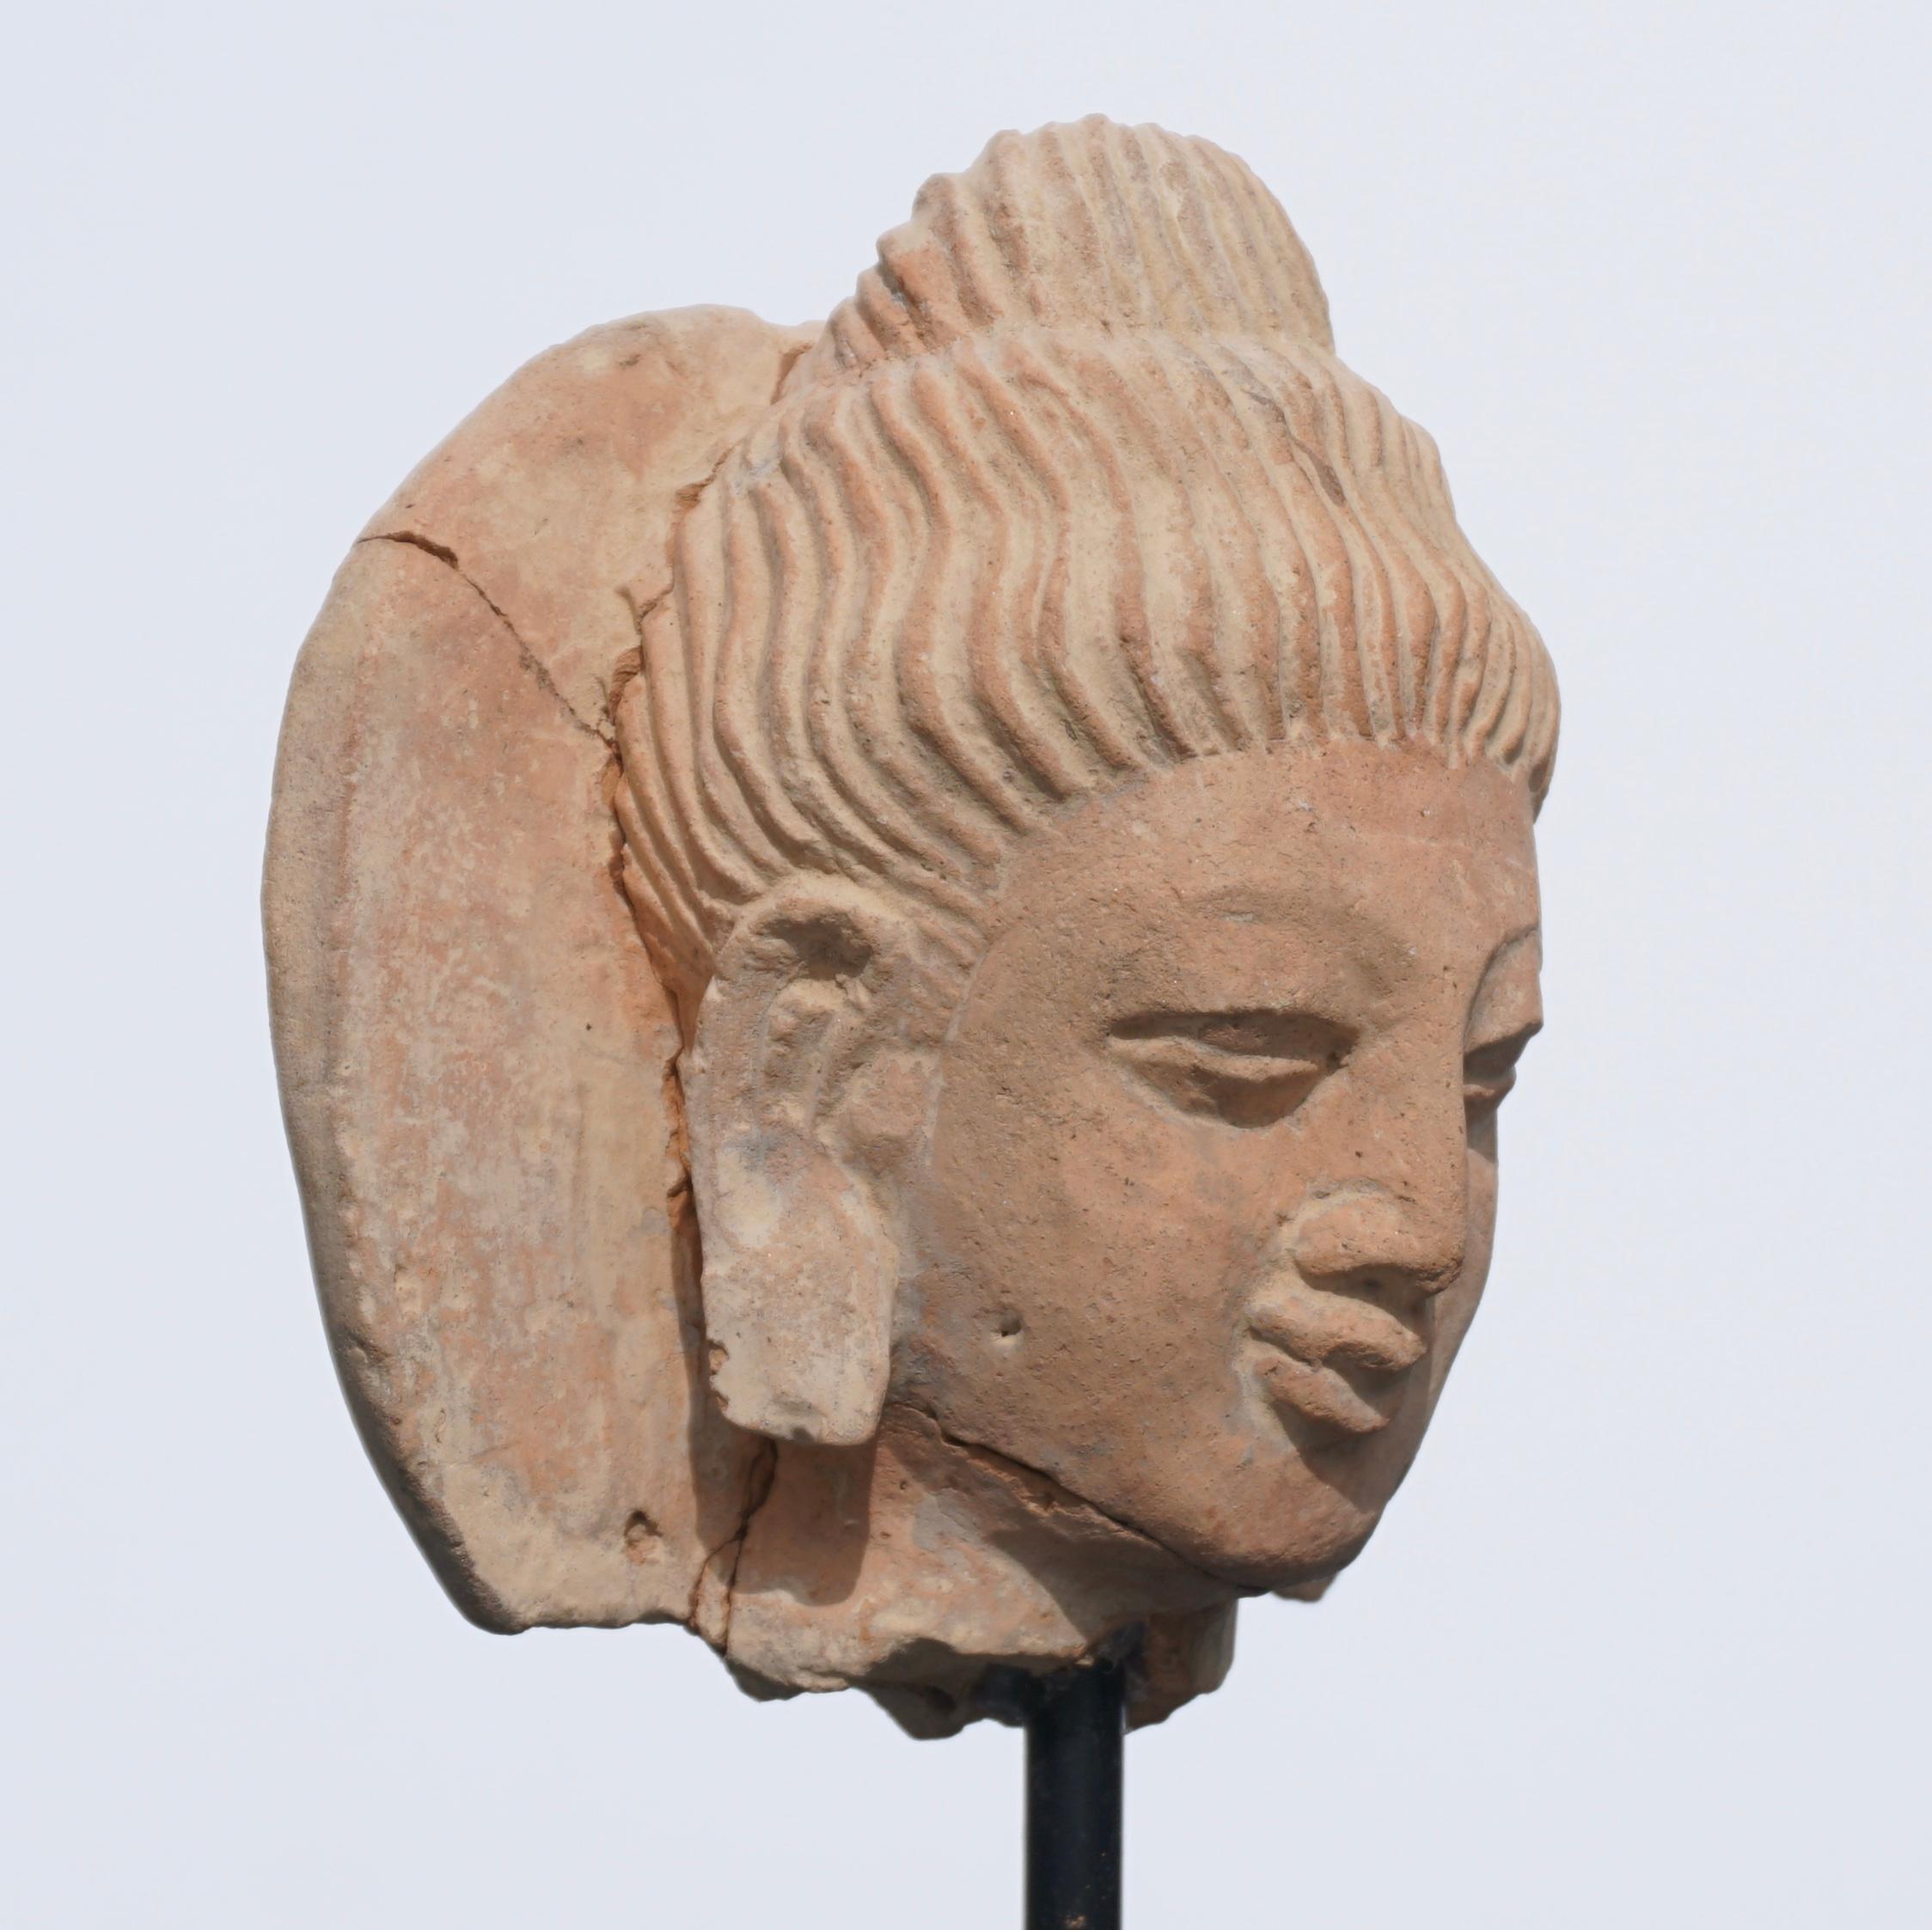 Ein Gandhara-Buddha-Kopf aus Terrakotta. 

Einer der ältesten Buddhas der Welt. Buddha wurde erstmals von griechischen Künstlern im 2. Jahrhundert in Gandhara (Afghanistan/Pakistan) dargestellt. Zunächst vor allem in Stein (Schiefer):: aber als die